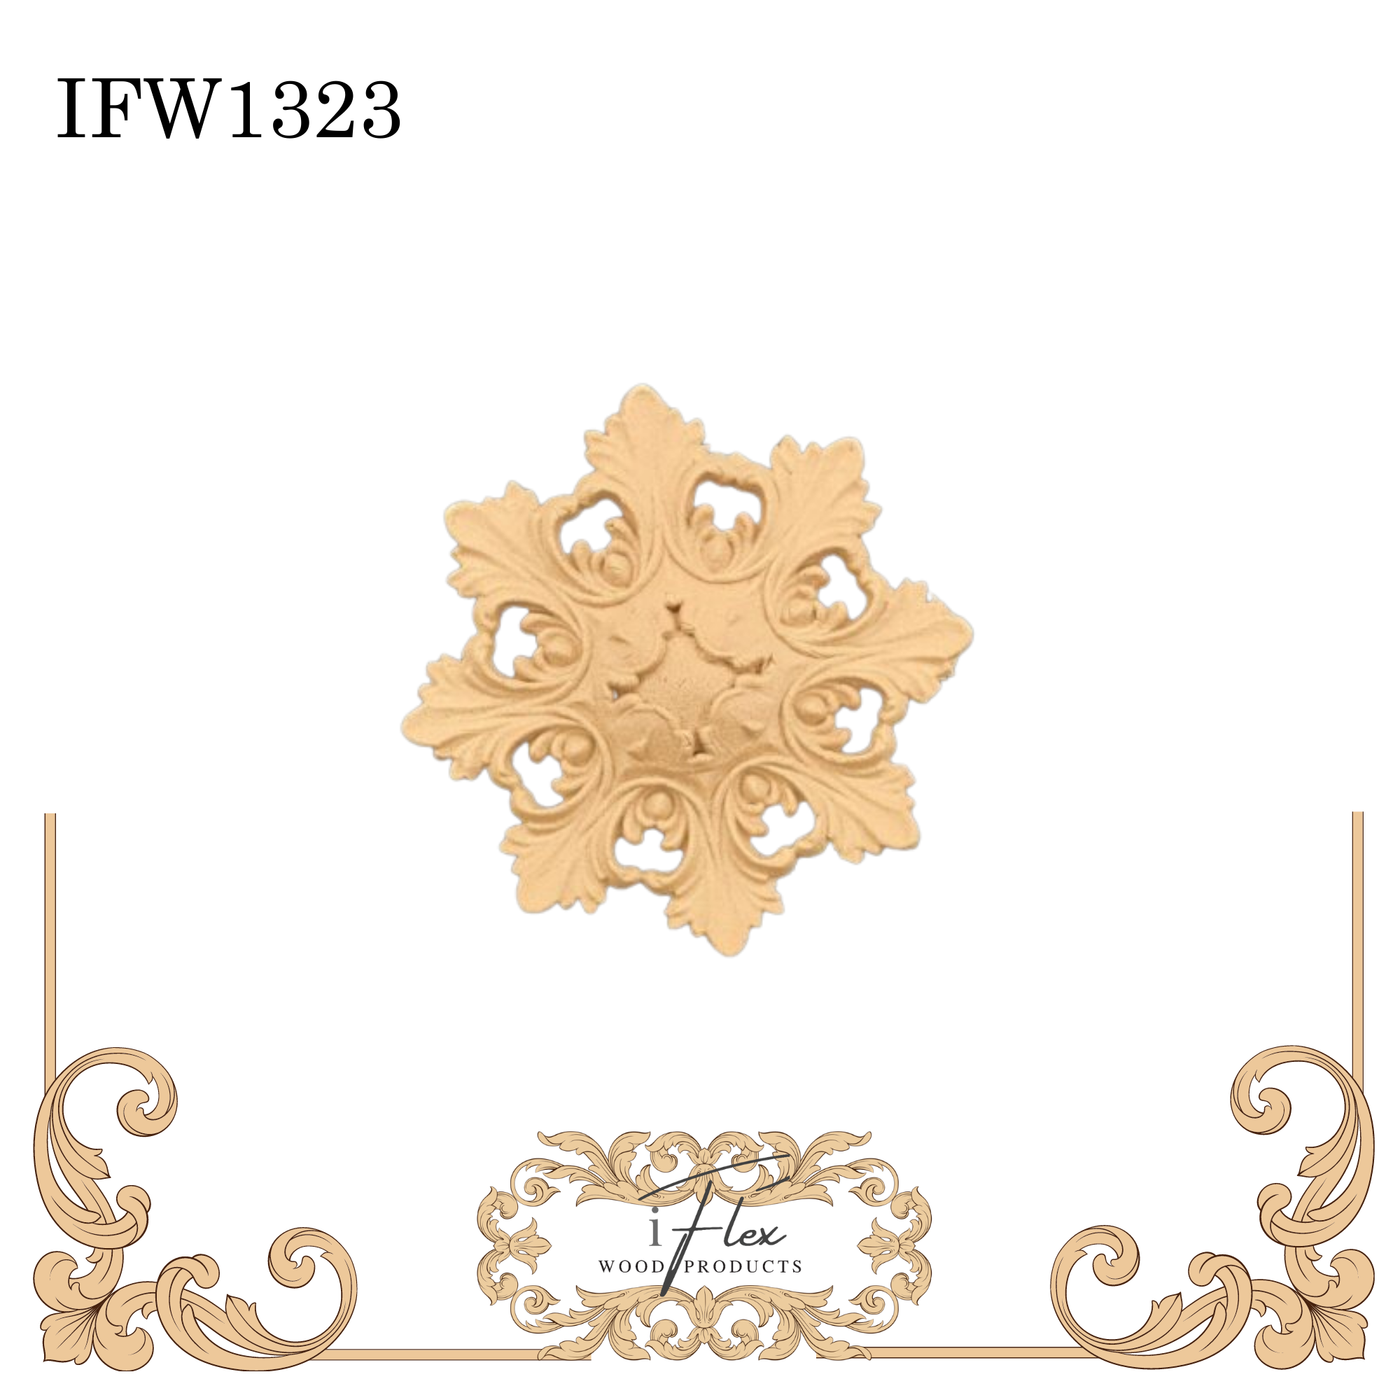 IFW 1323